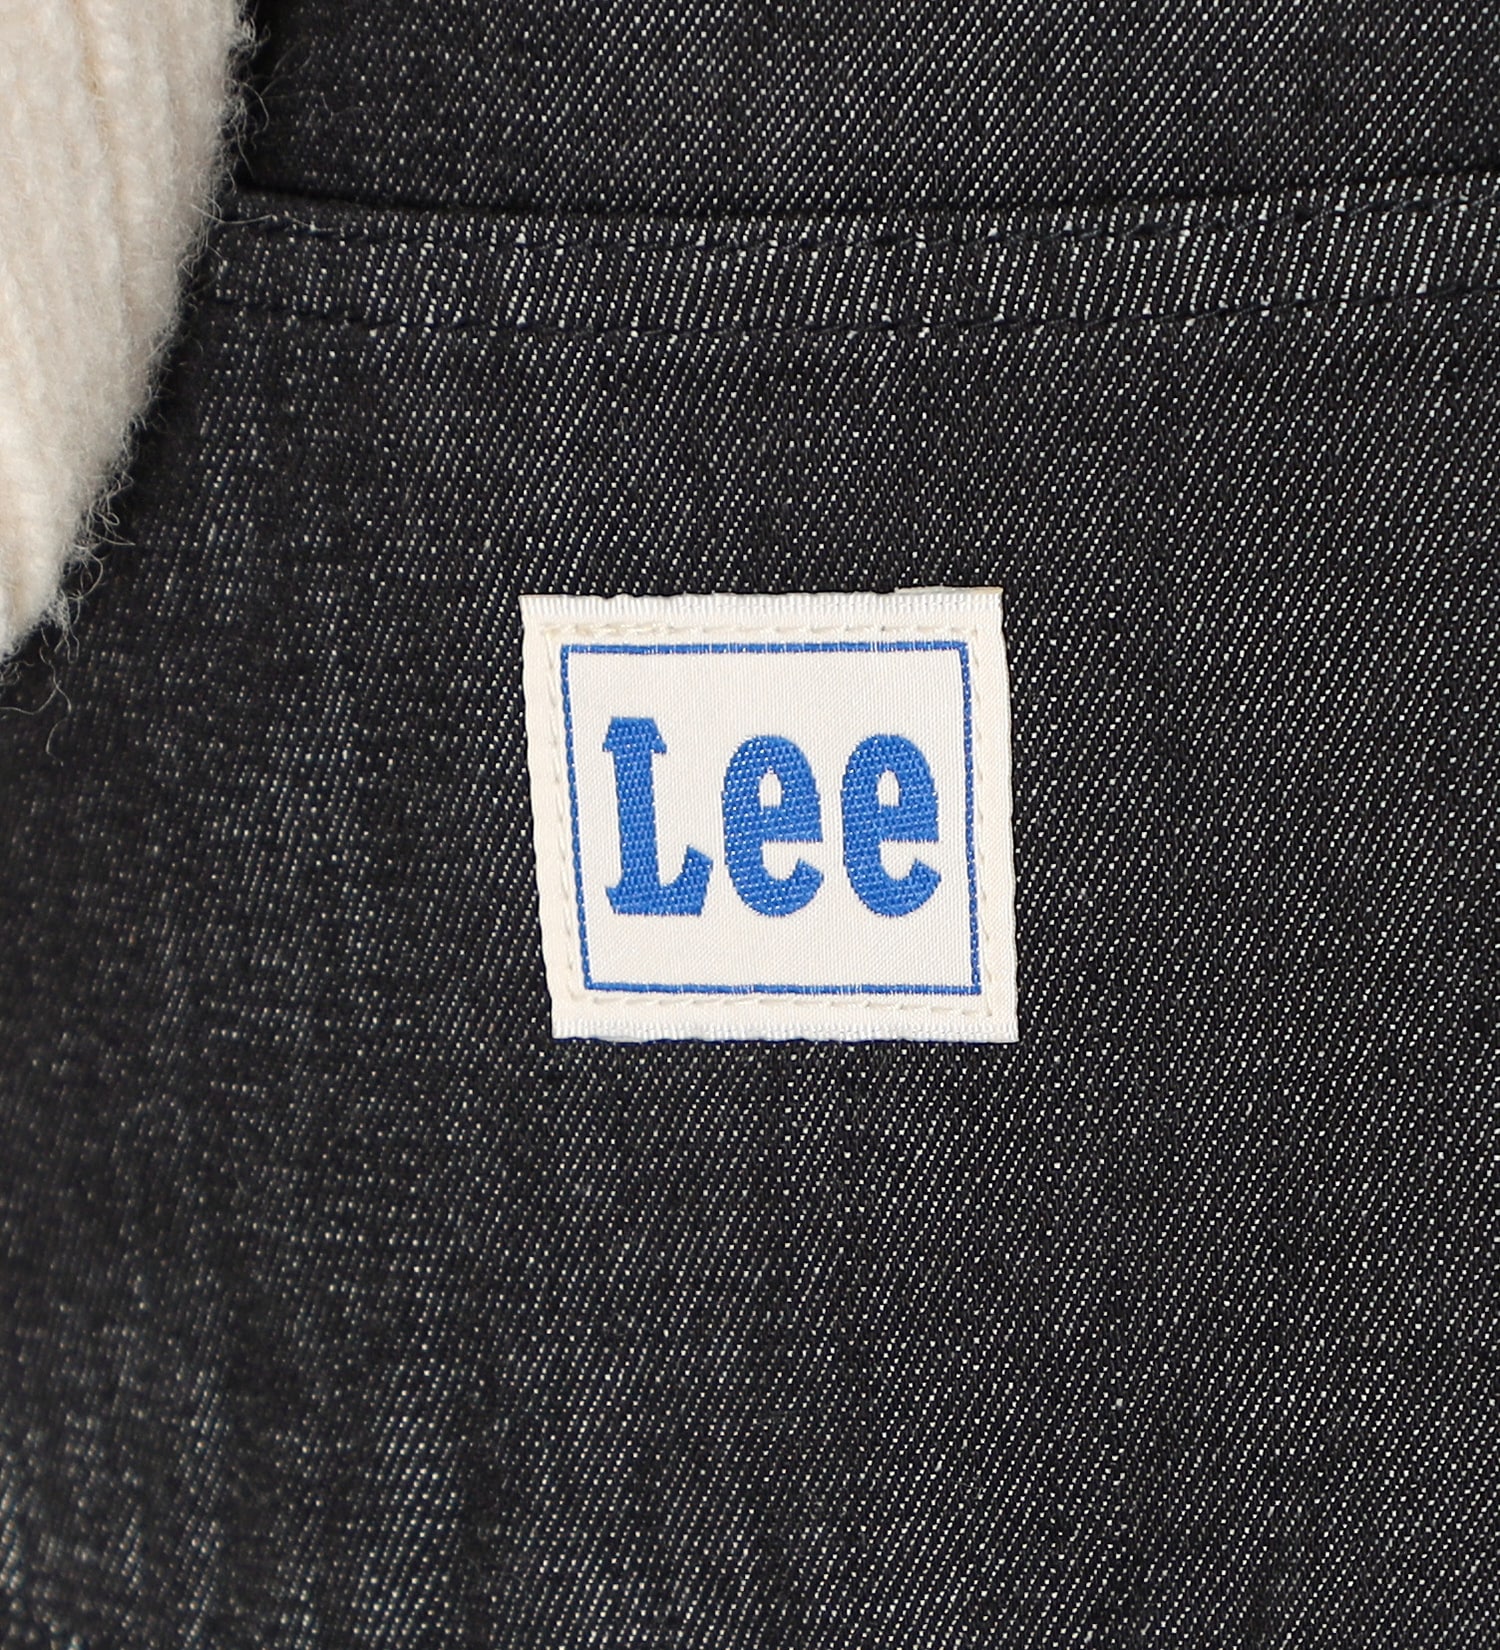 Lee(リー)のリラックス ワイドサロペット|オールインワン/サロペット/オーバーオール/レディース|ブラックデニム